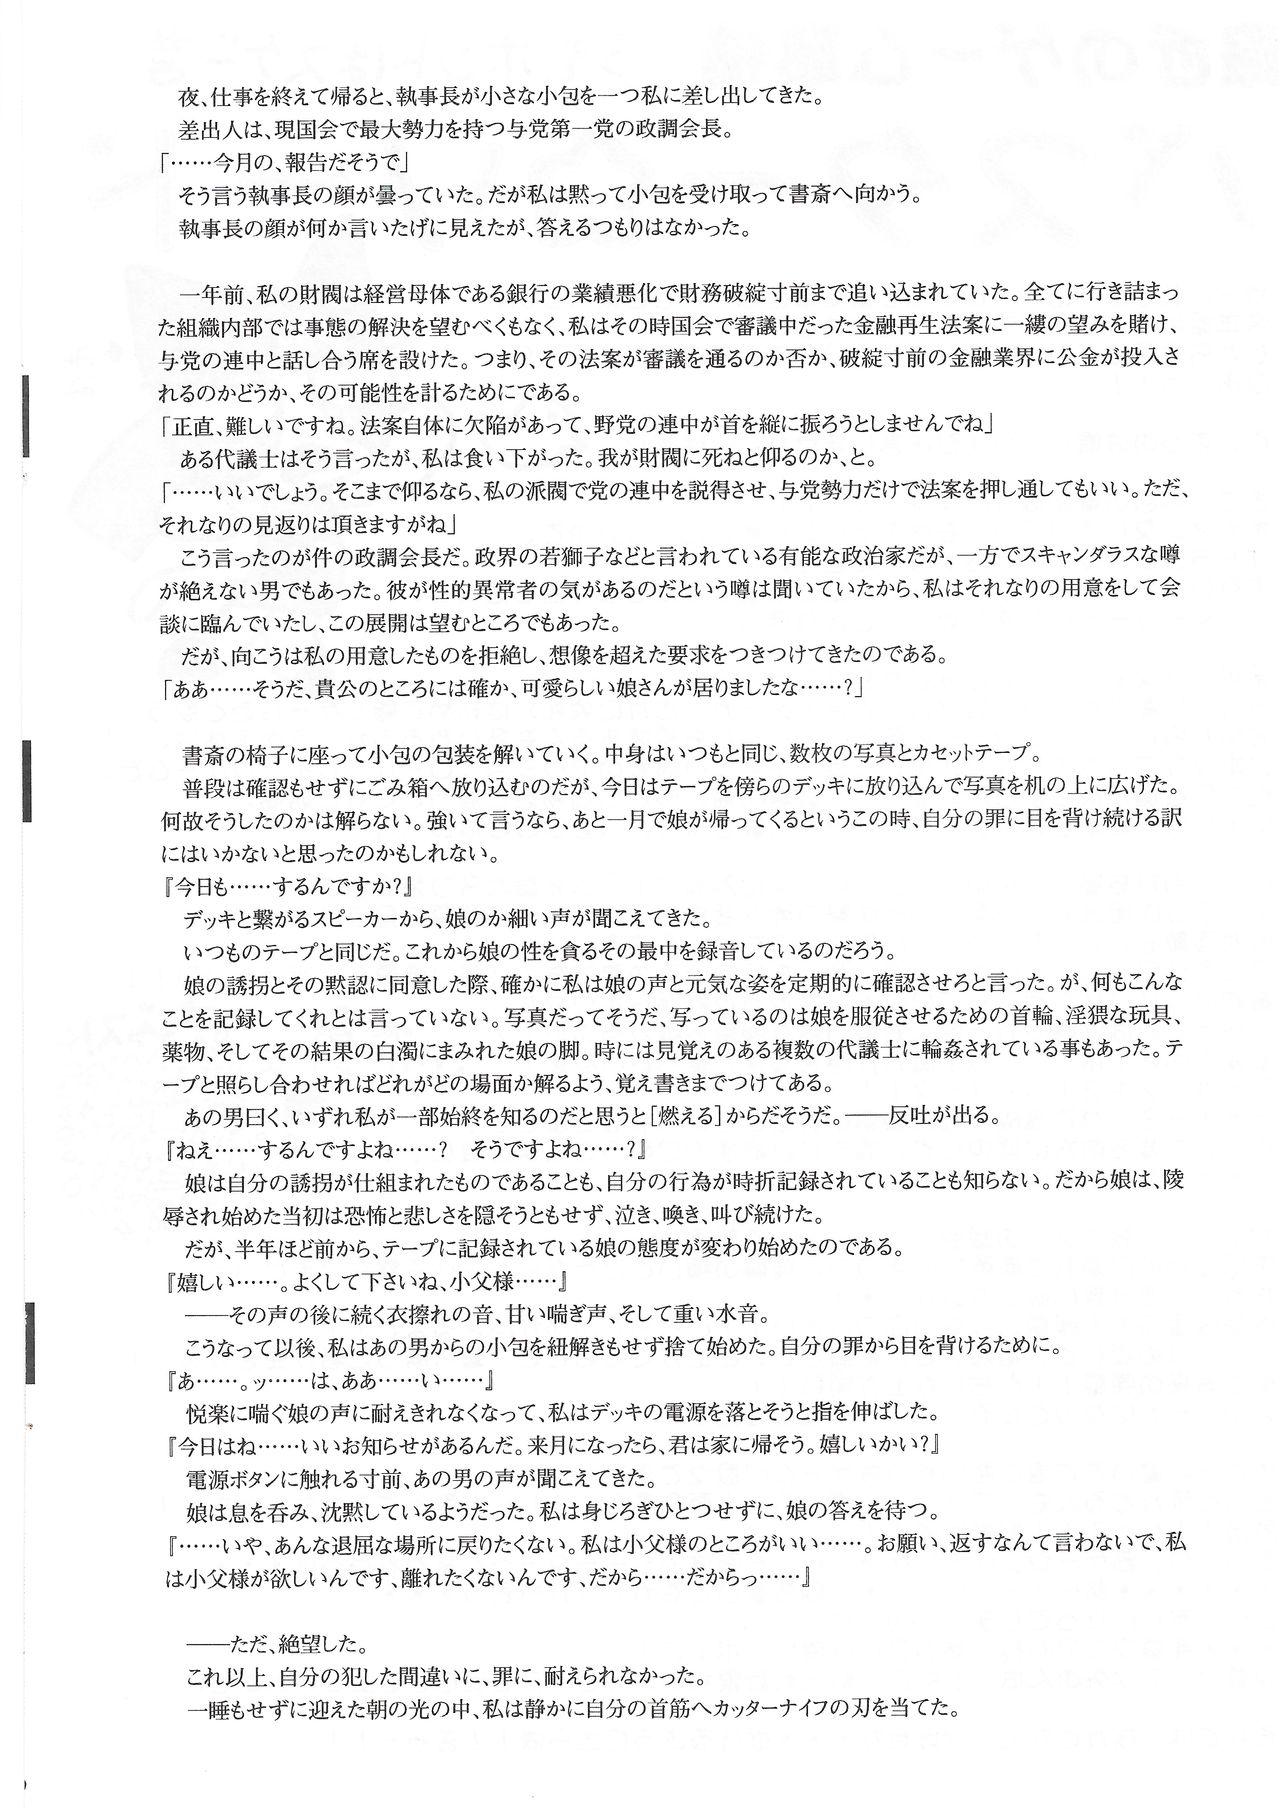 Arisu no Denchi Bakudan Vol. 11 20